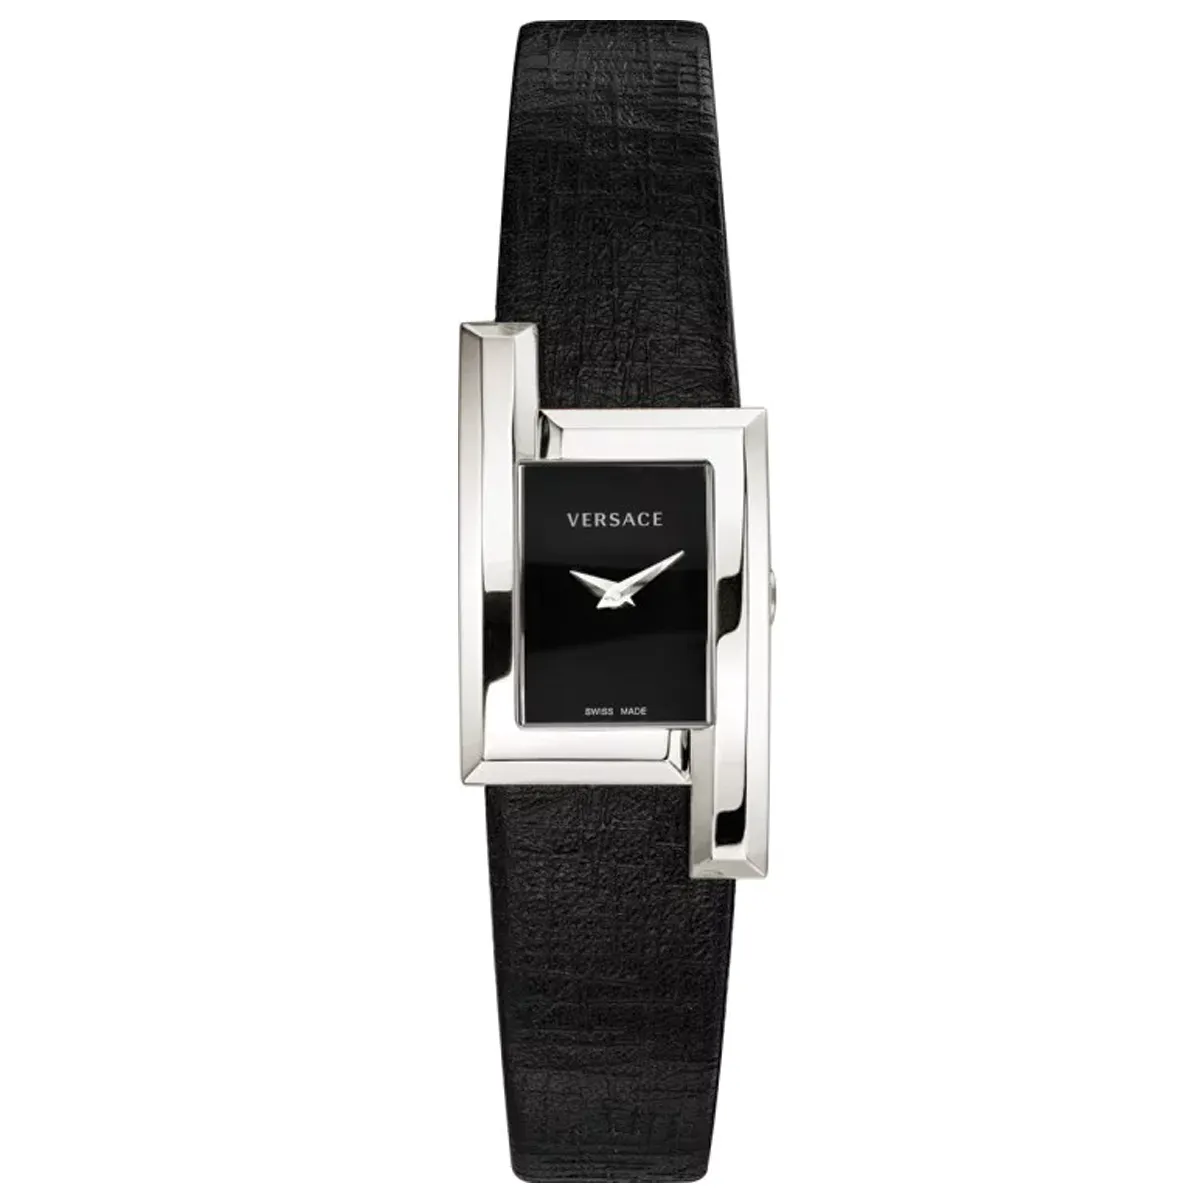 Đồng Hồ Versace Greca Icon Black Watch VELU00119 mặt số màu đen. Thân vỏ bằng thép. Dây đeo bằng da.